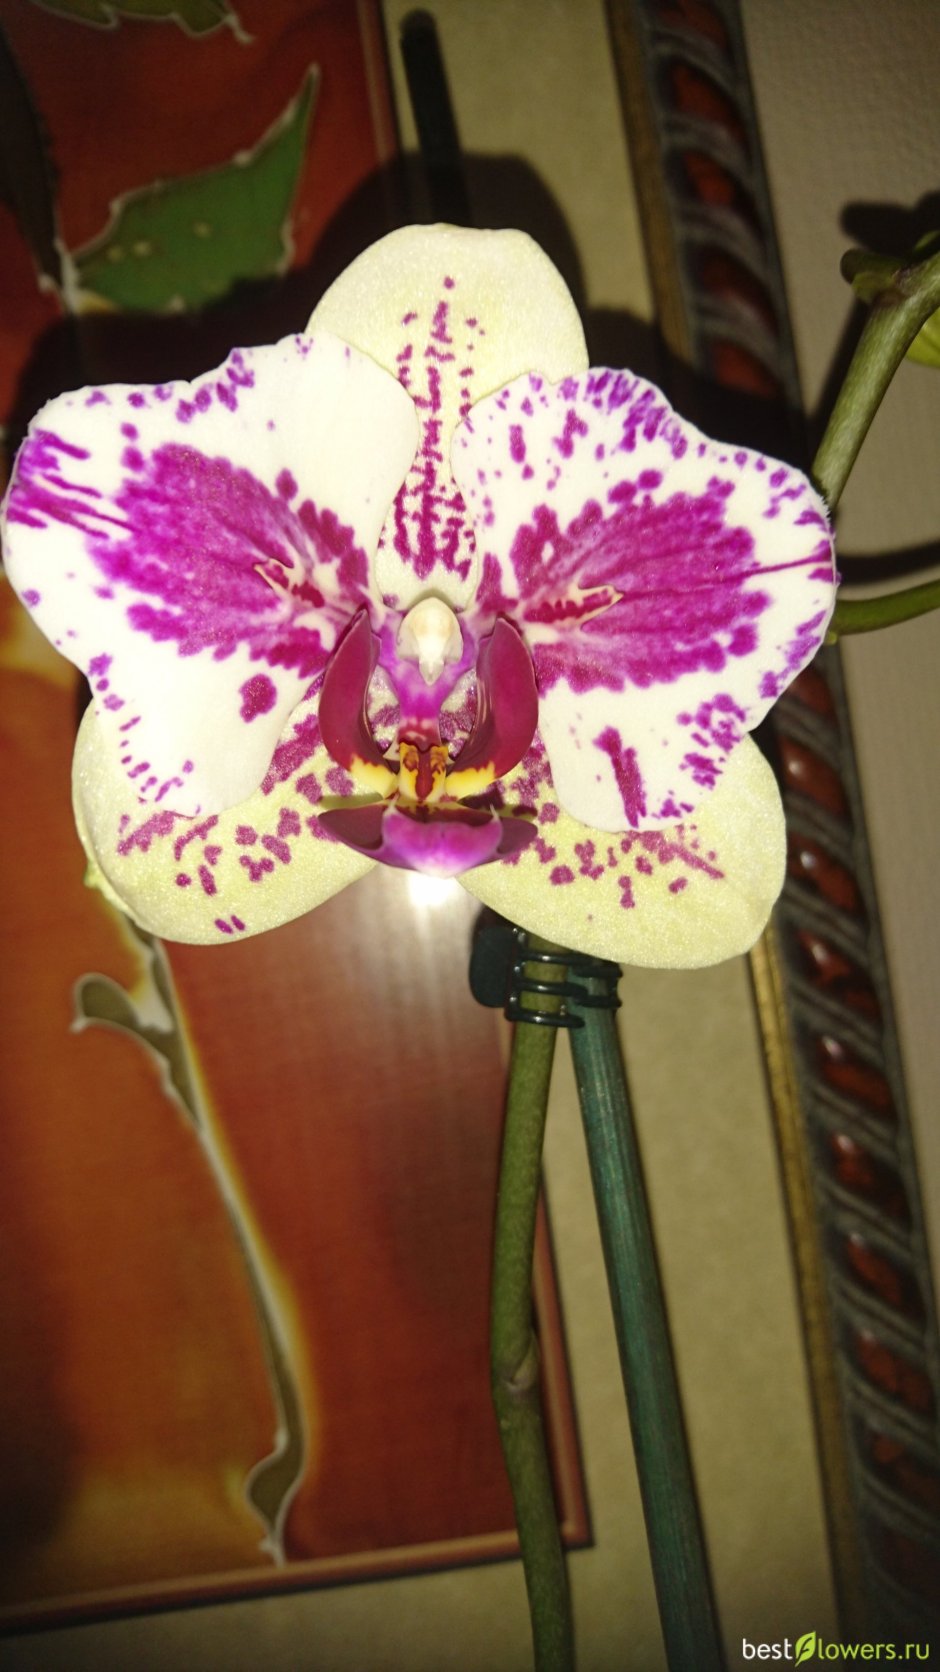 Phalaenopsis Rothschildiana